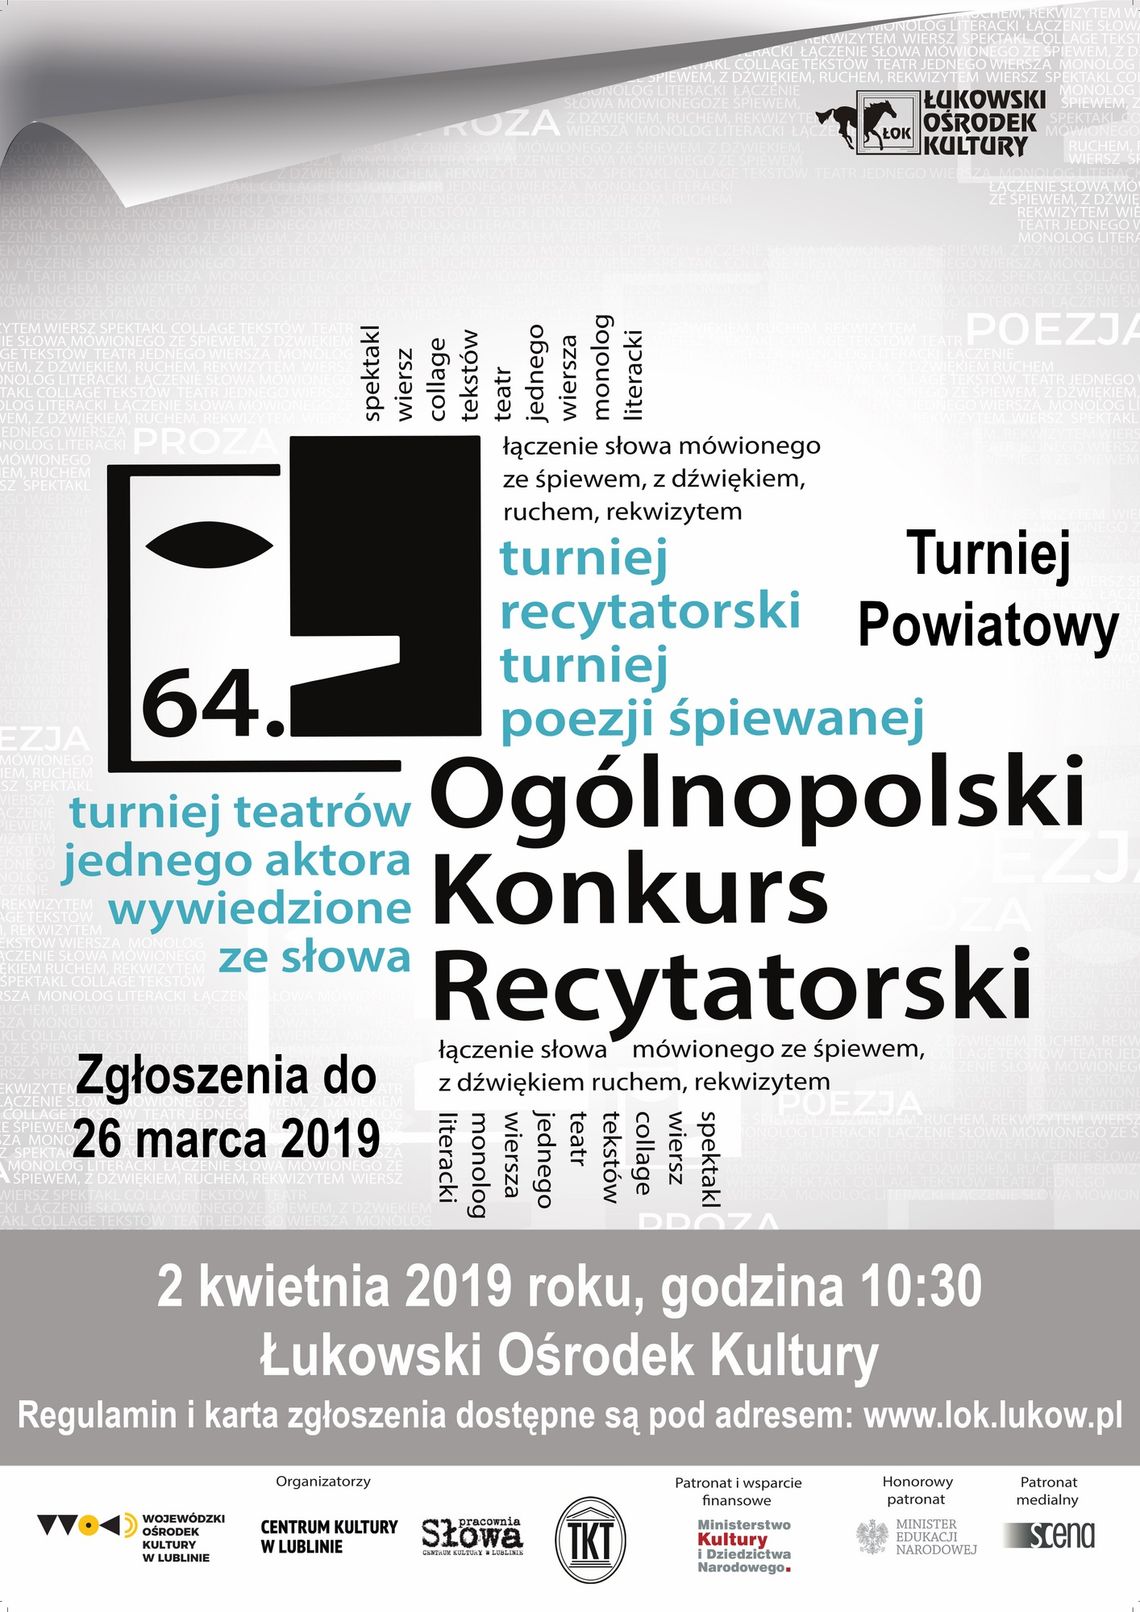 Eliminacje powiatowe 64. Ogólnopolskiego Konkursu Recytatorskiego /zgłoszenia do: 26 marca 2019